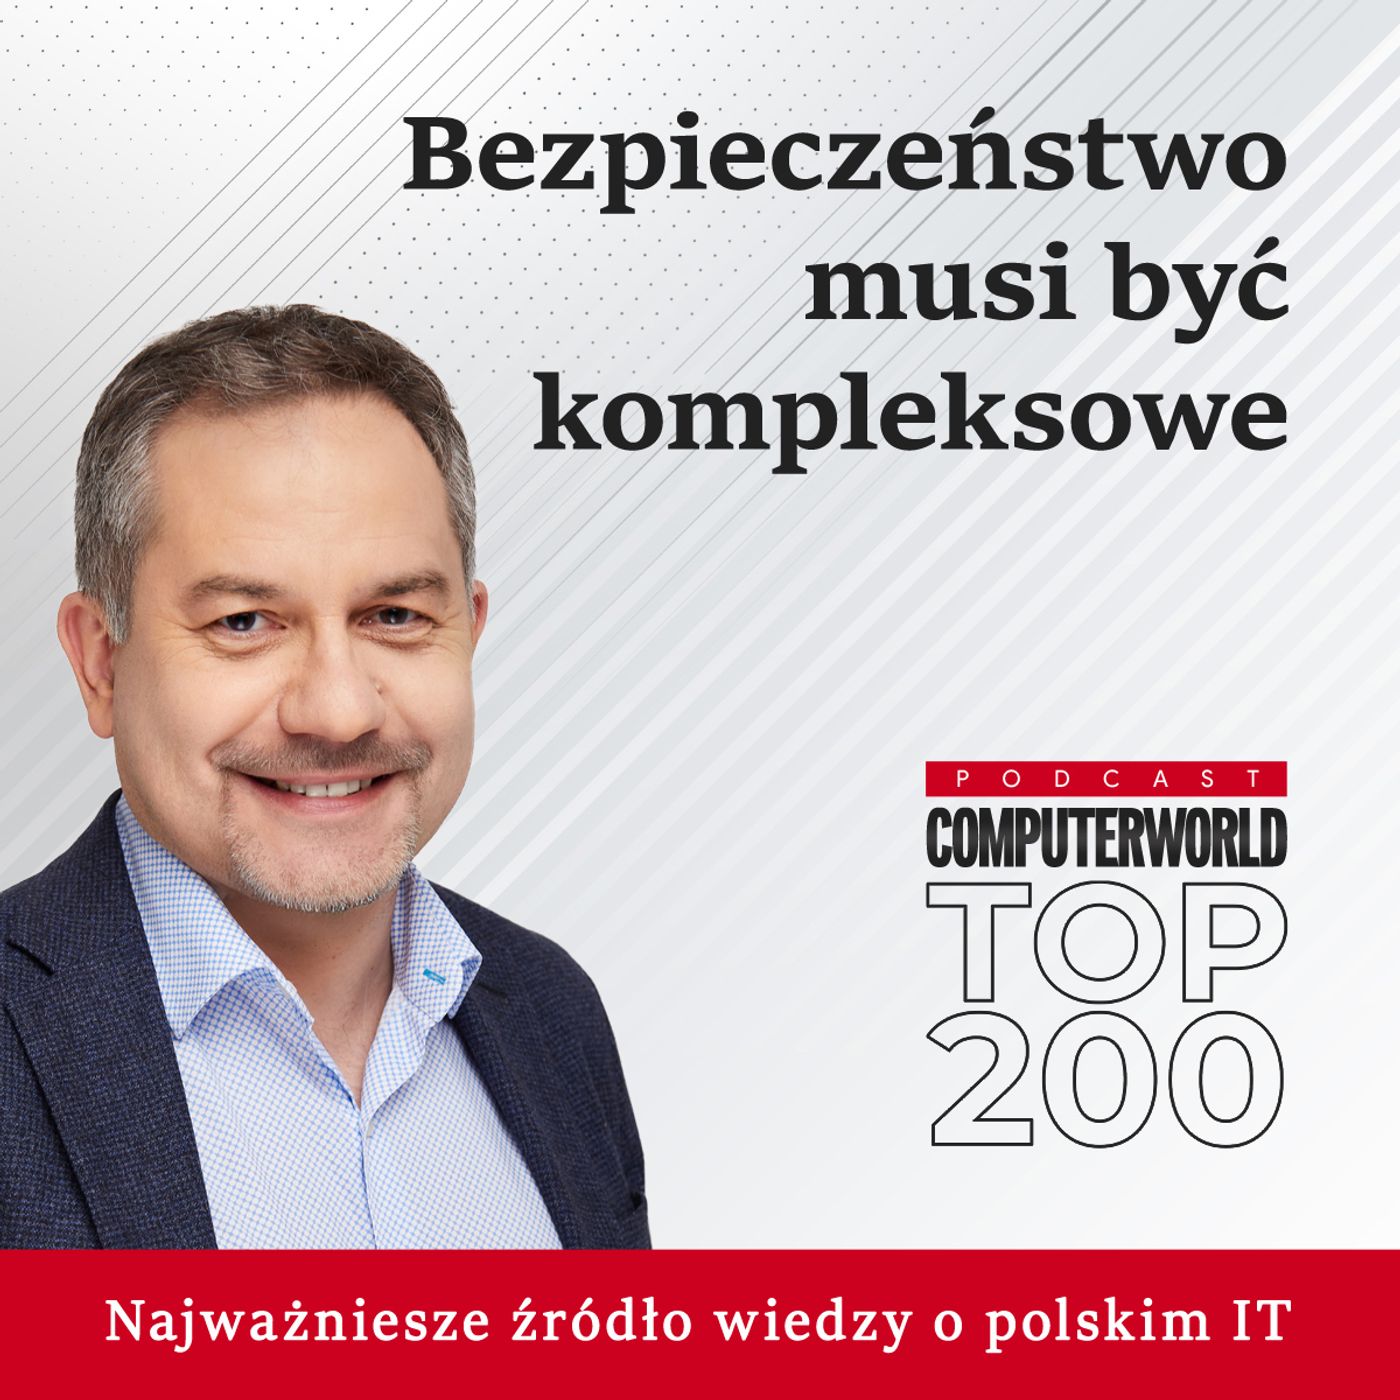 Computerworld TOP200: Bezpieczeństwo musi być kompleksowe